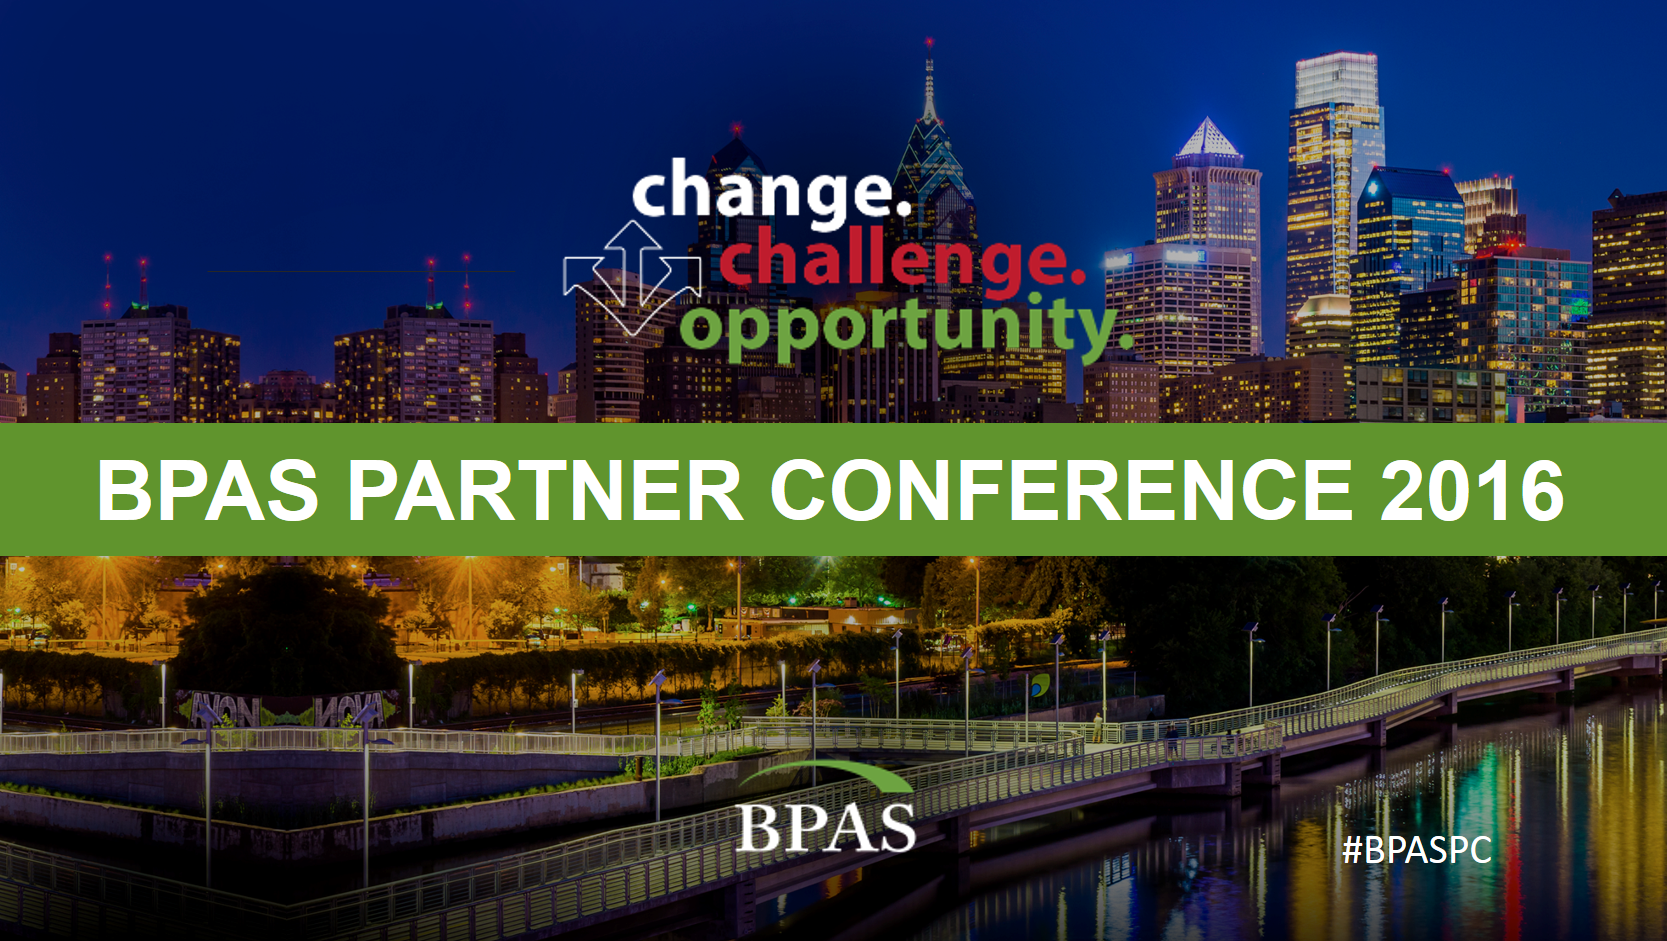 BPAS Partner Conference 2016 Slide Presentations